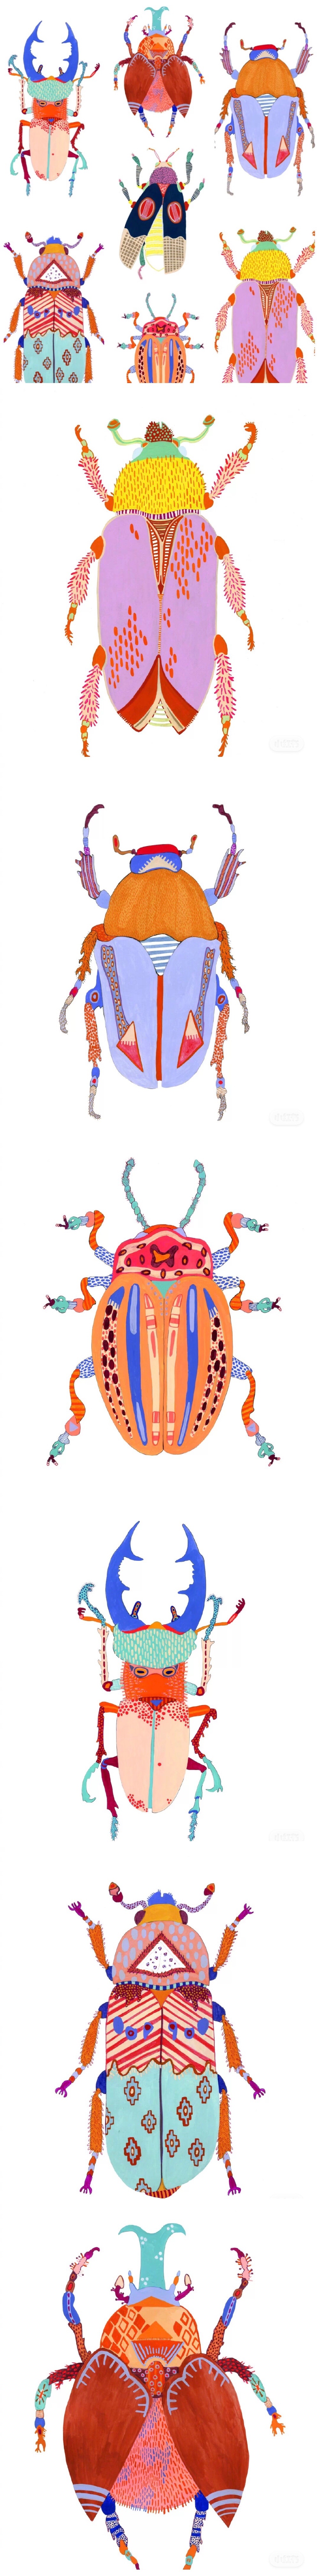 昆虫-创意儿童画